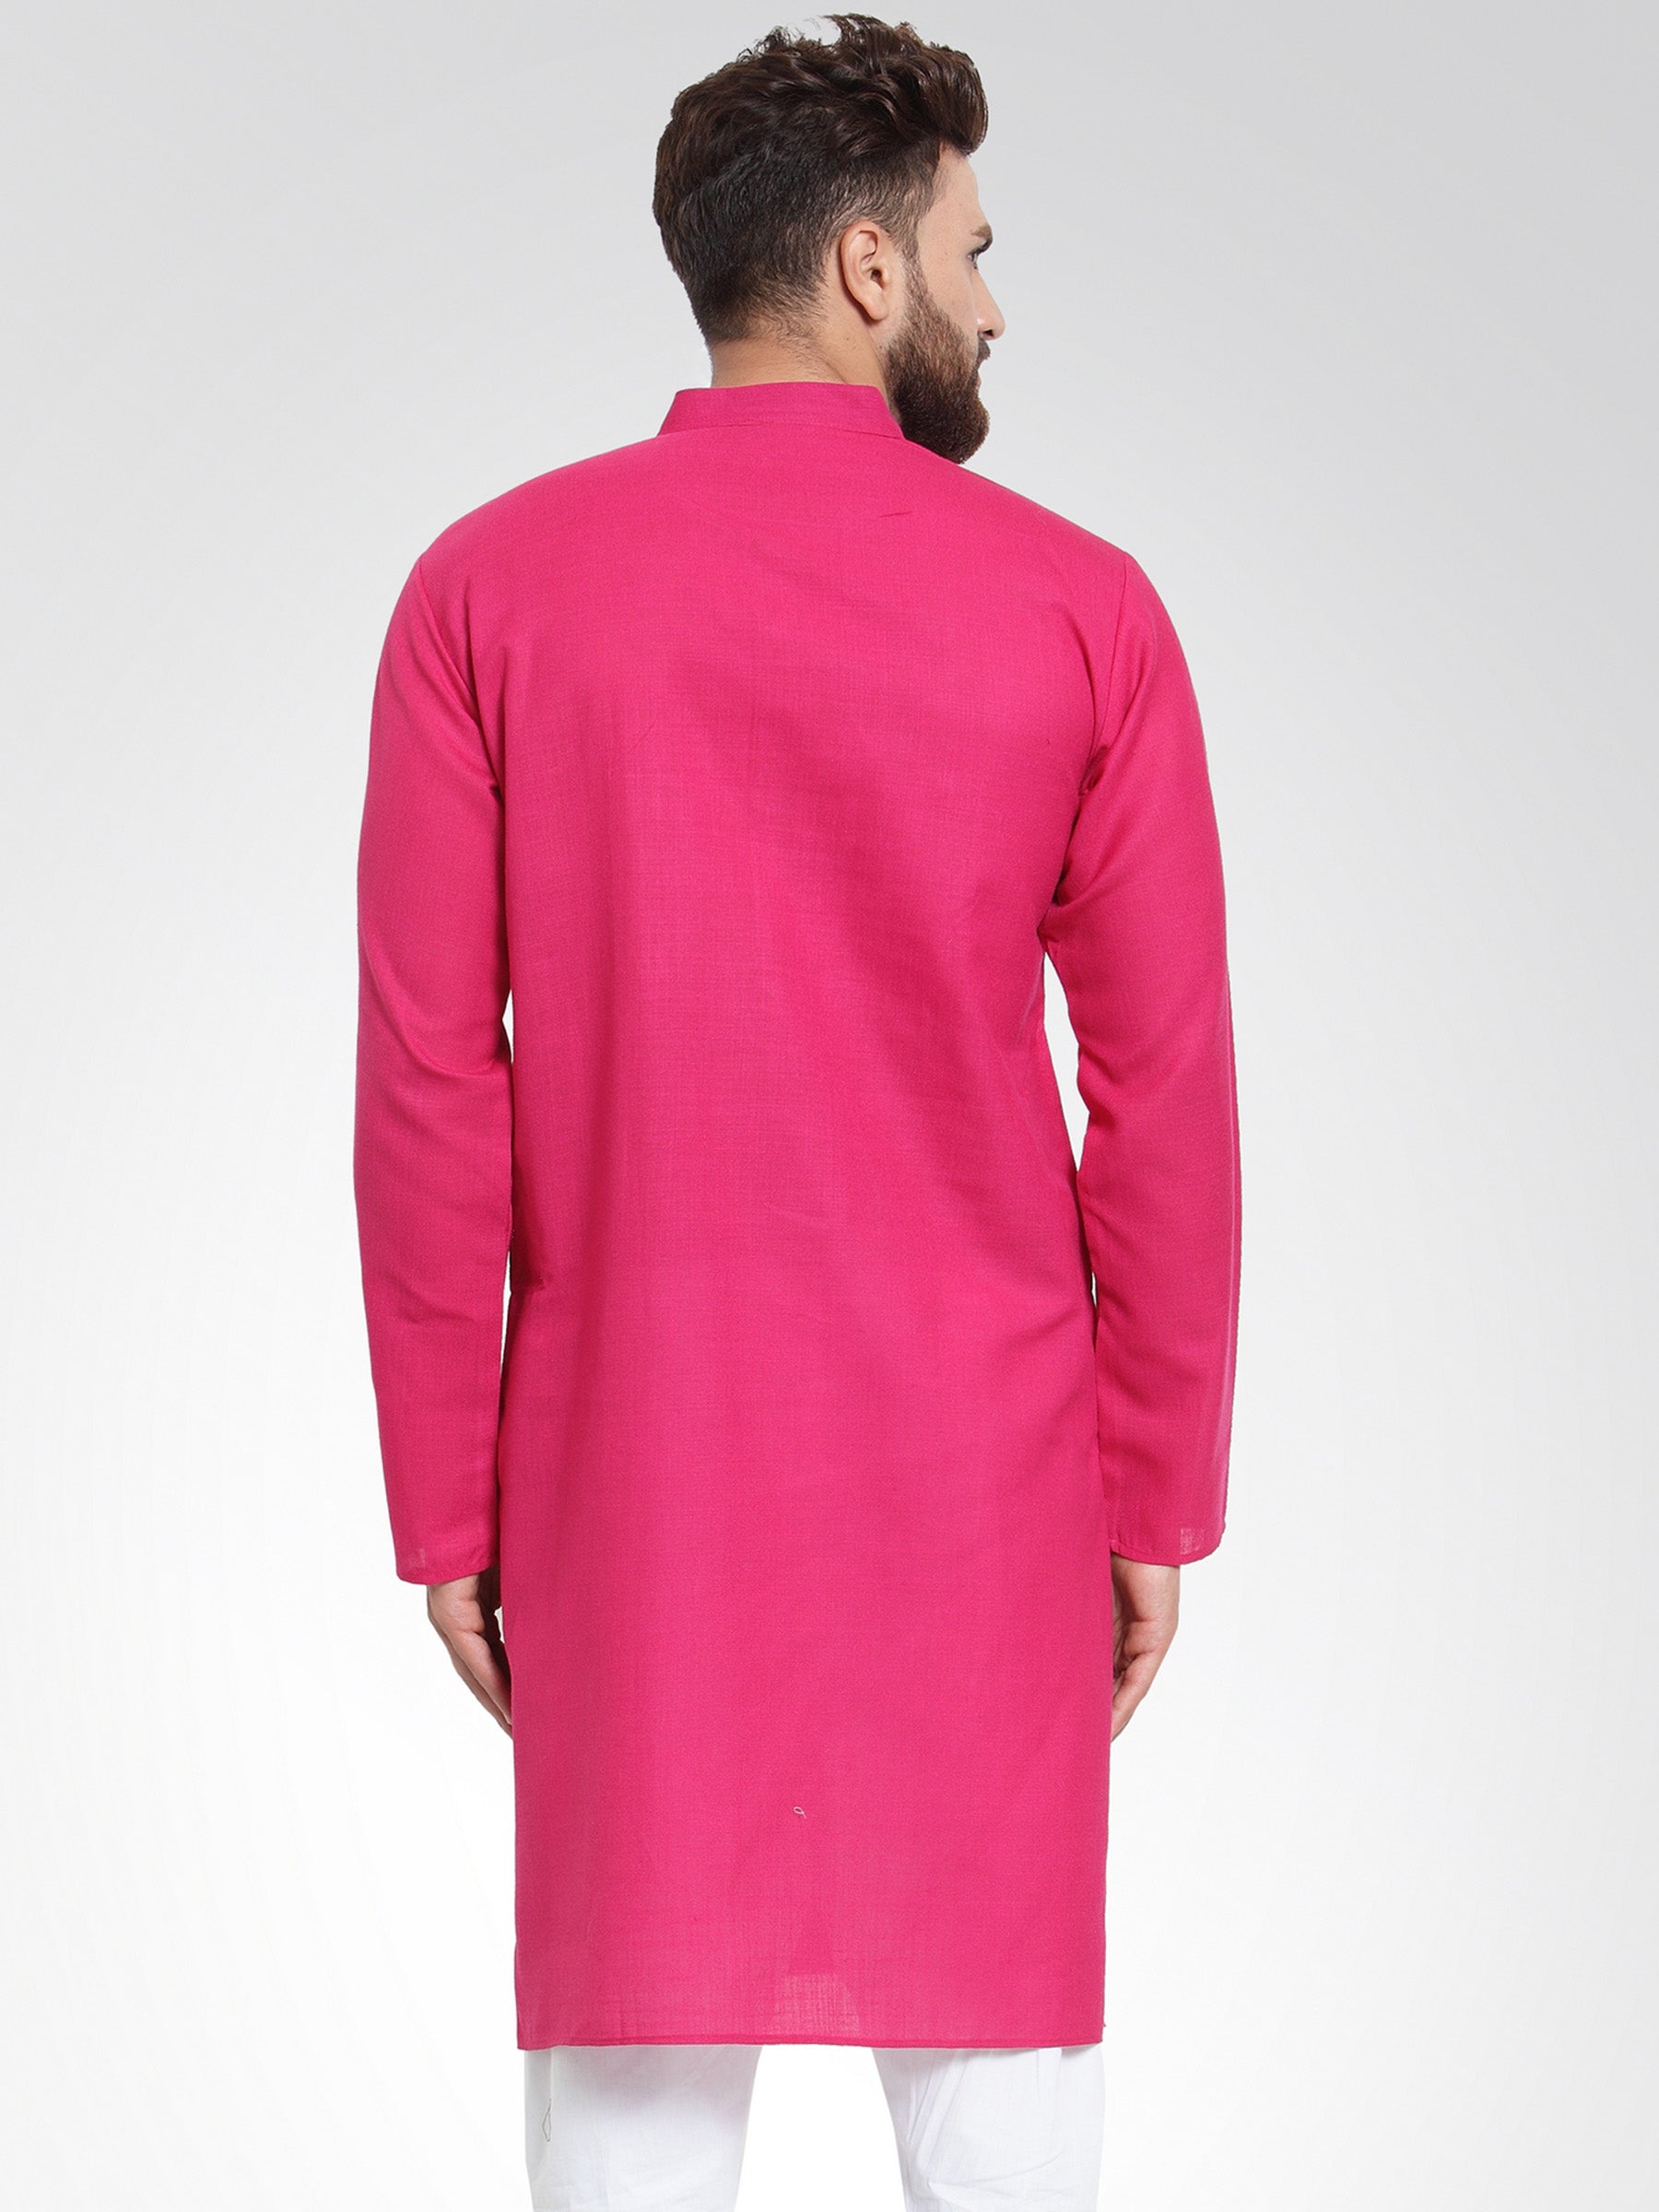 Men's Pink & White Solid Kurta Only ( KO 532 Pink ) - Virat Fashions